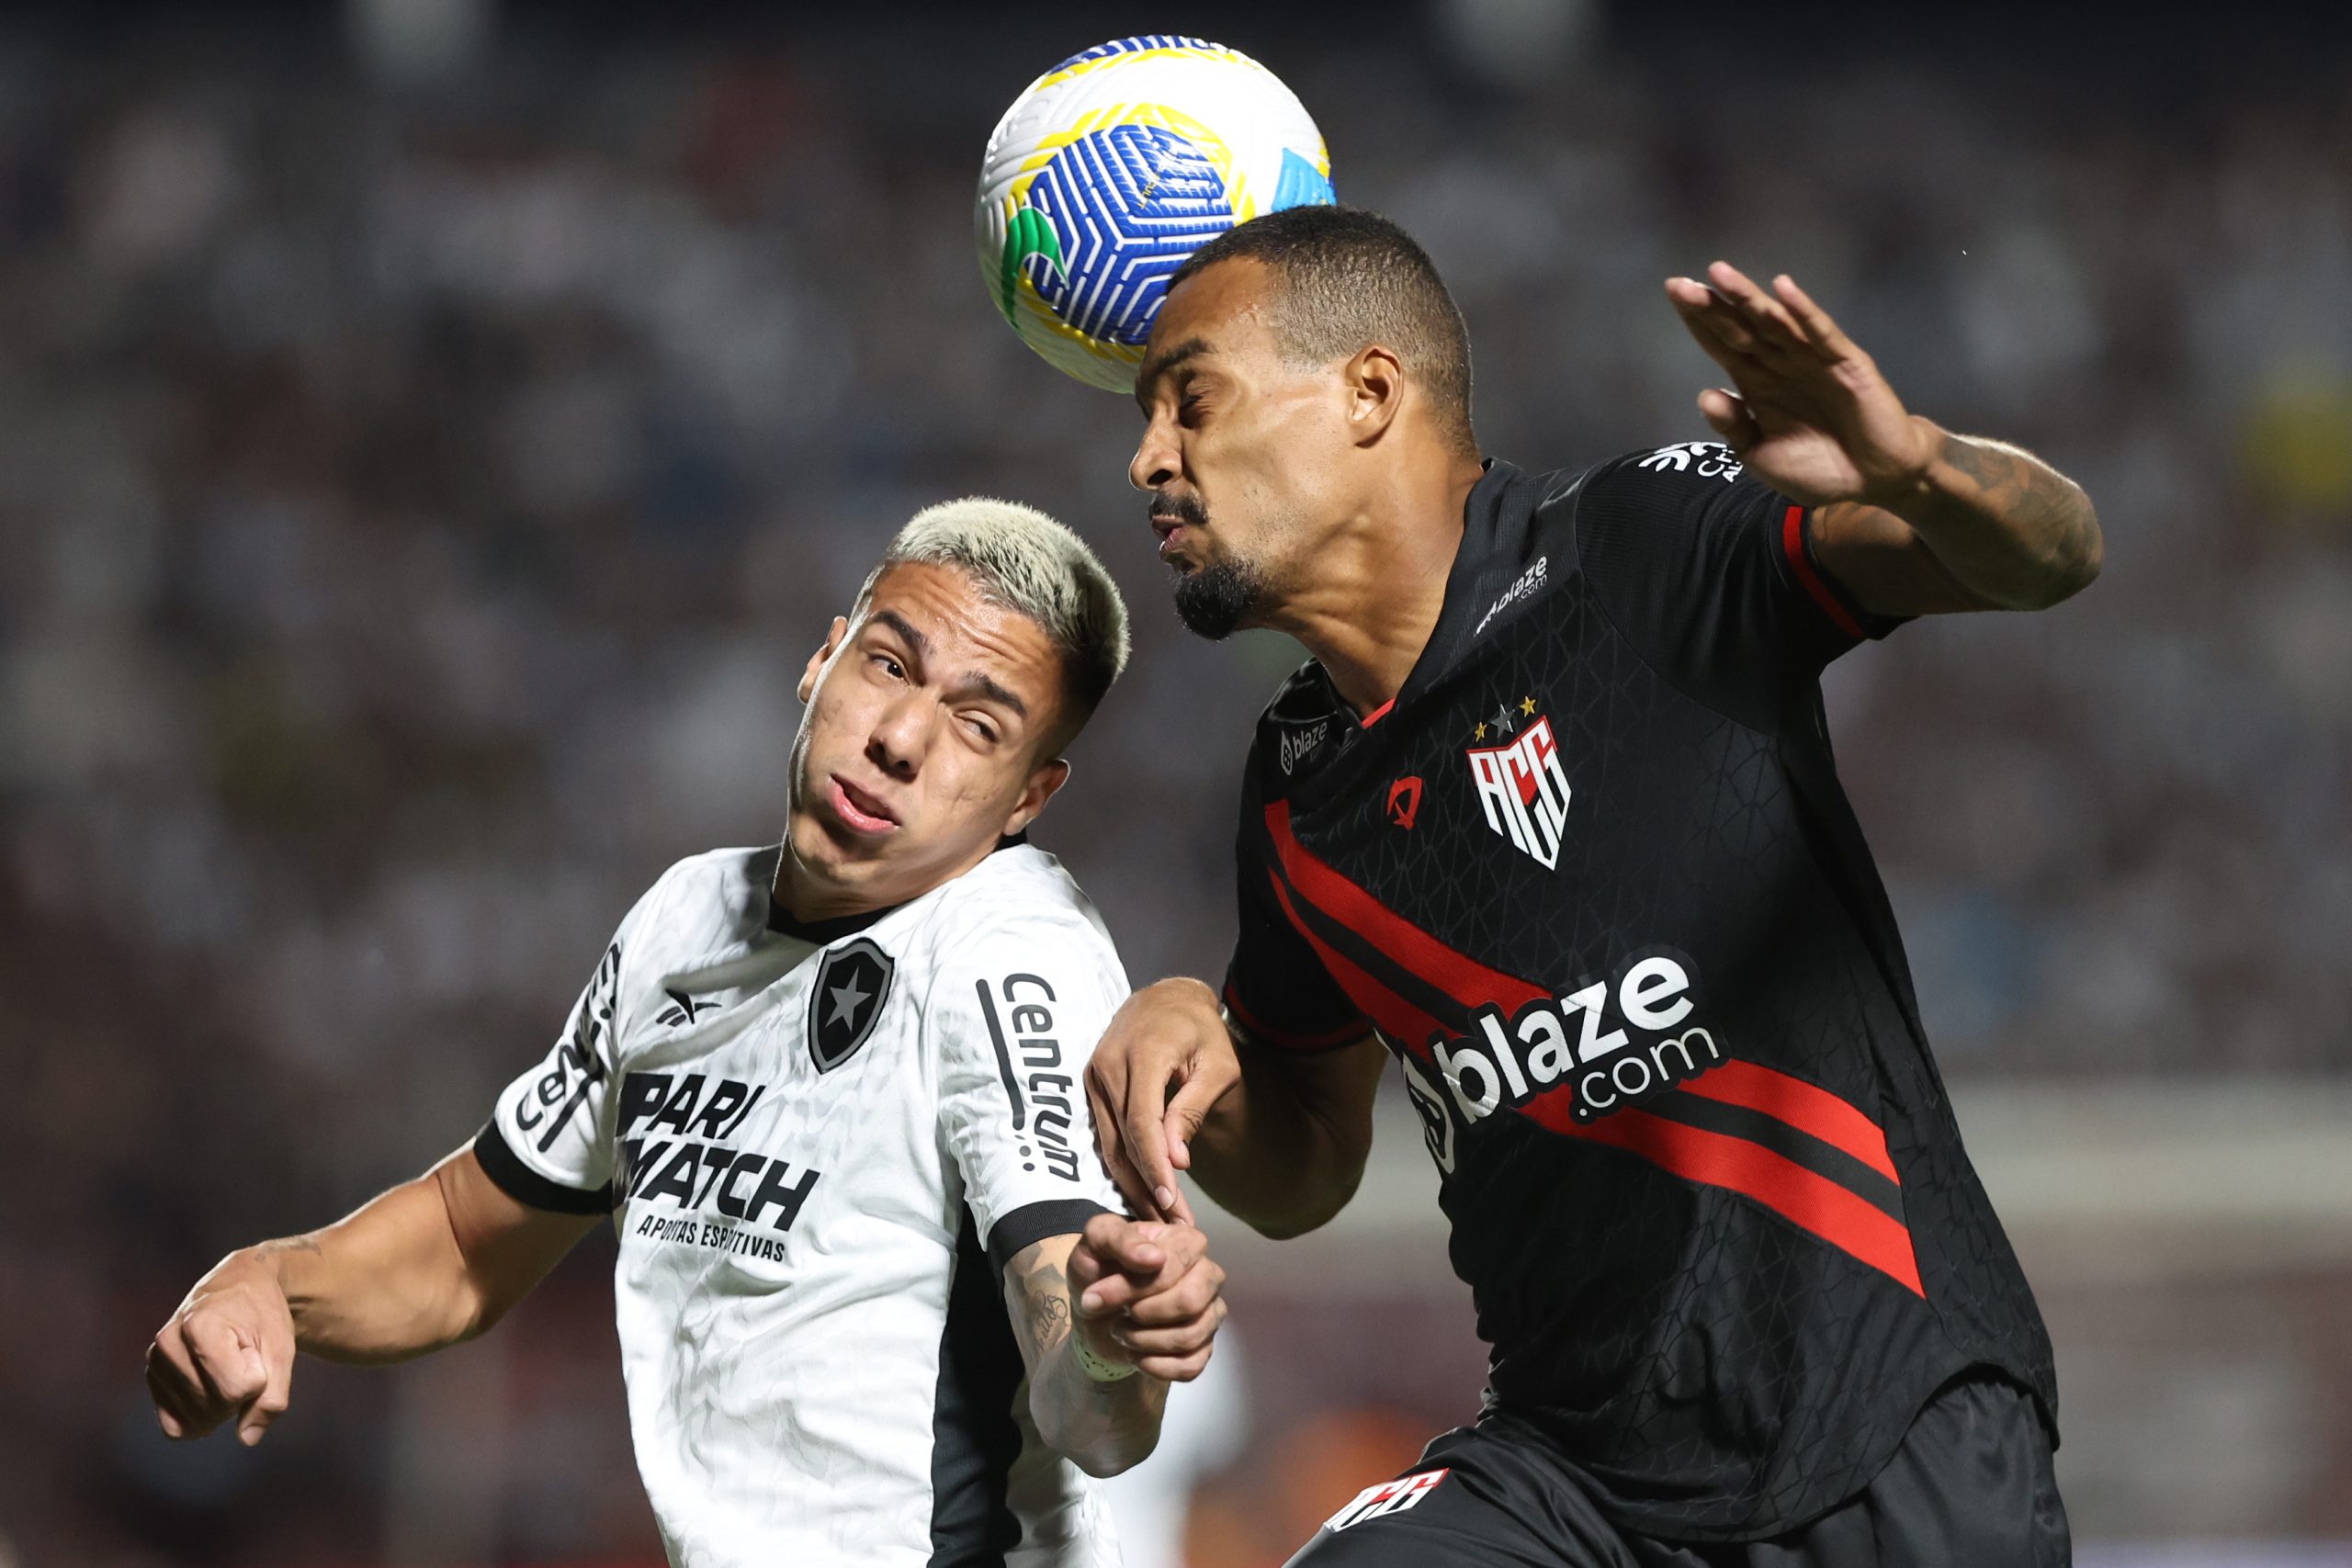 Carlos Alberto contra o Atlético-GO (Foto: Vítor Silva/Botafogo)